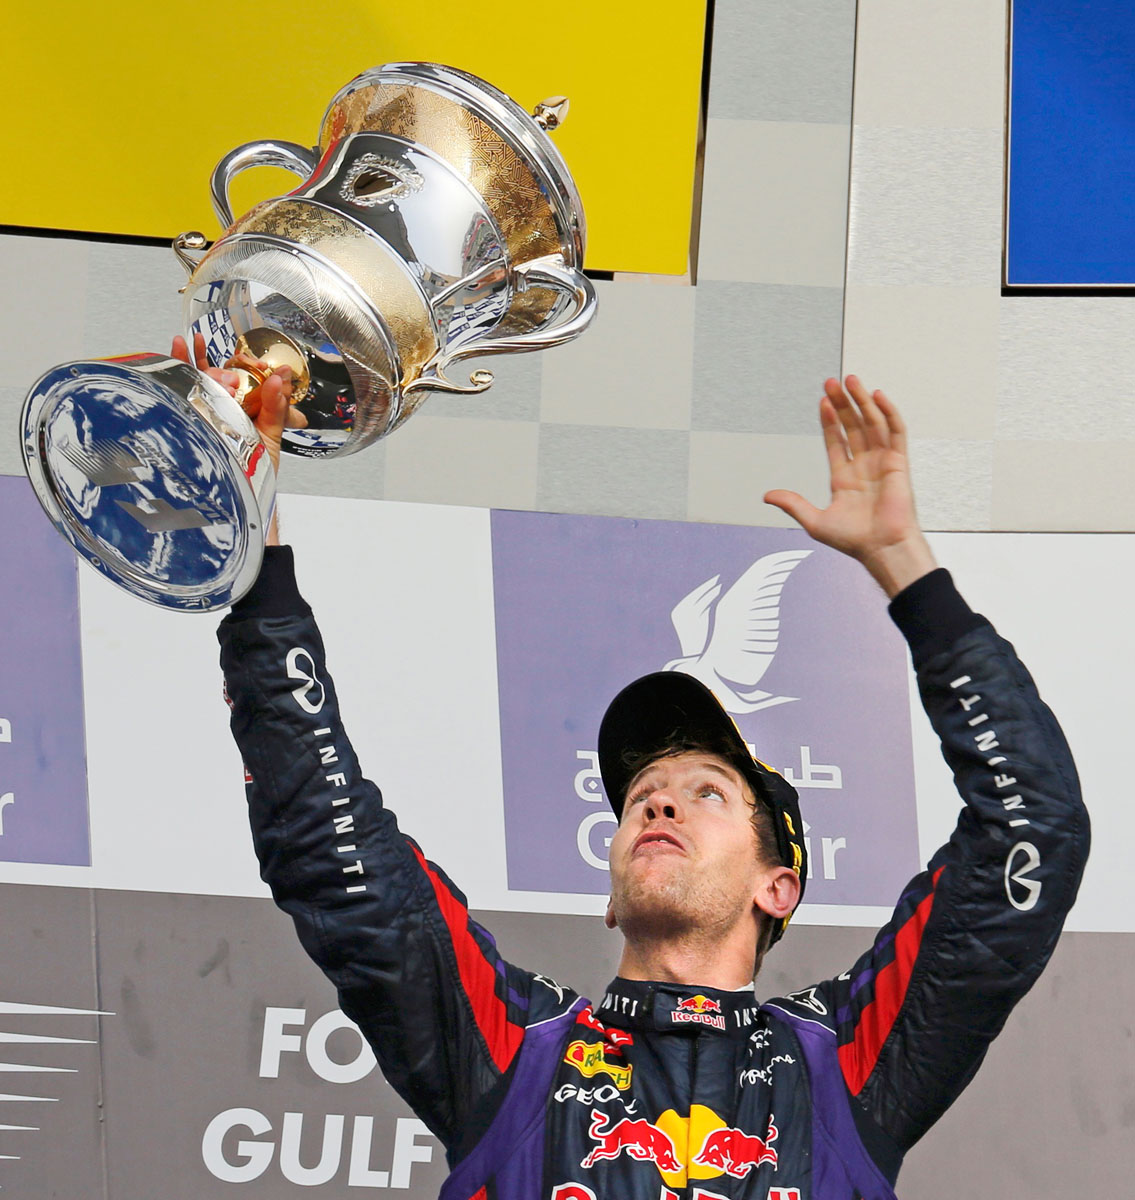 Miként a múlt két évben szinte mindig, megint Sebastian Vettel áll az élen